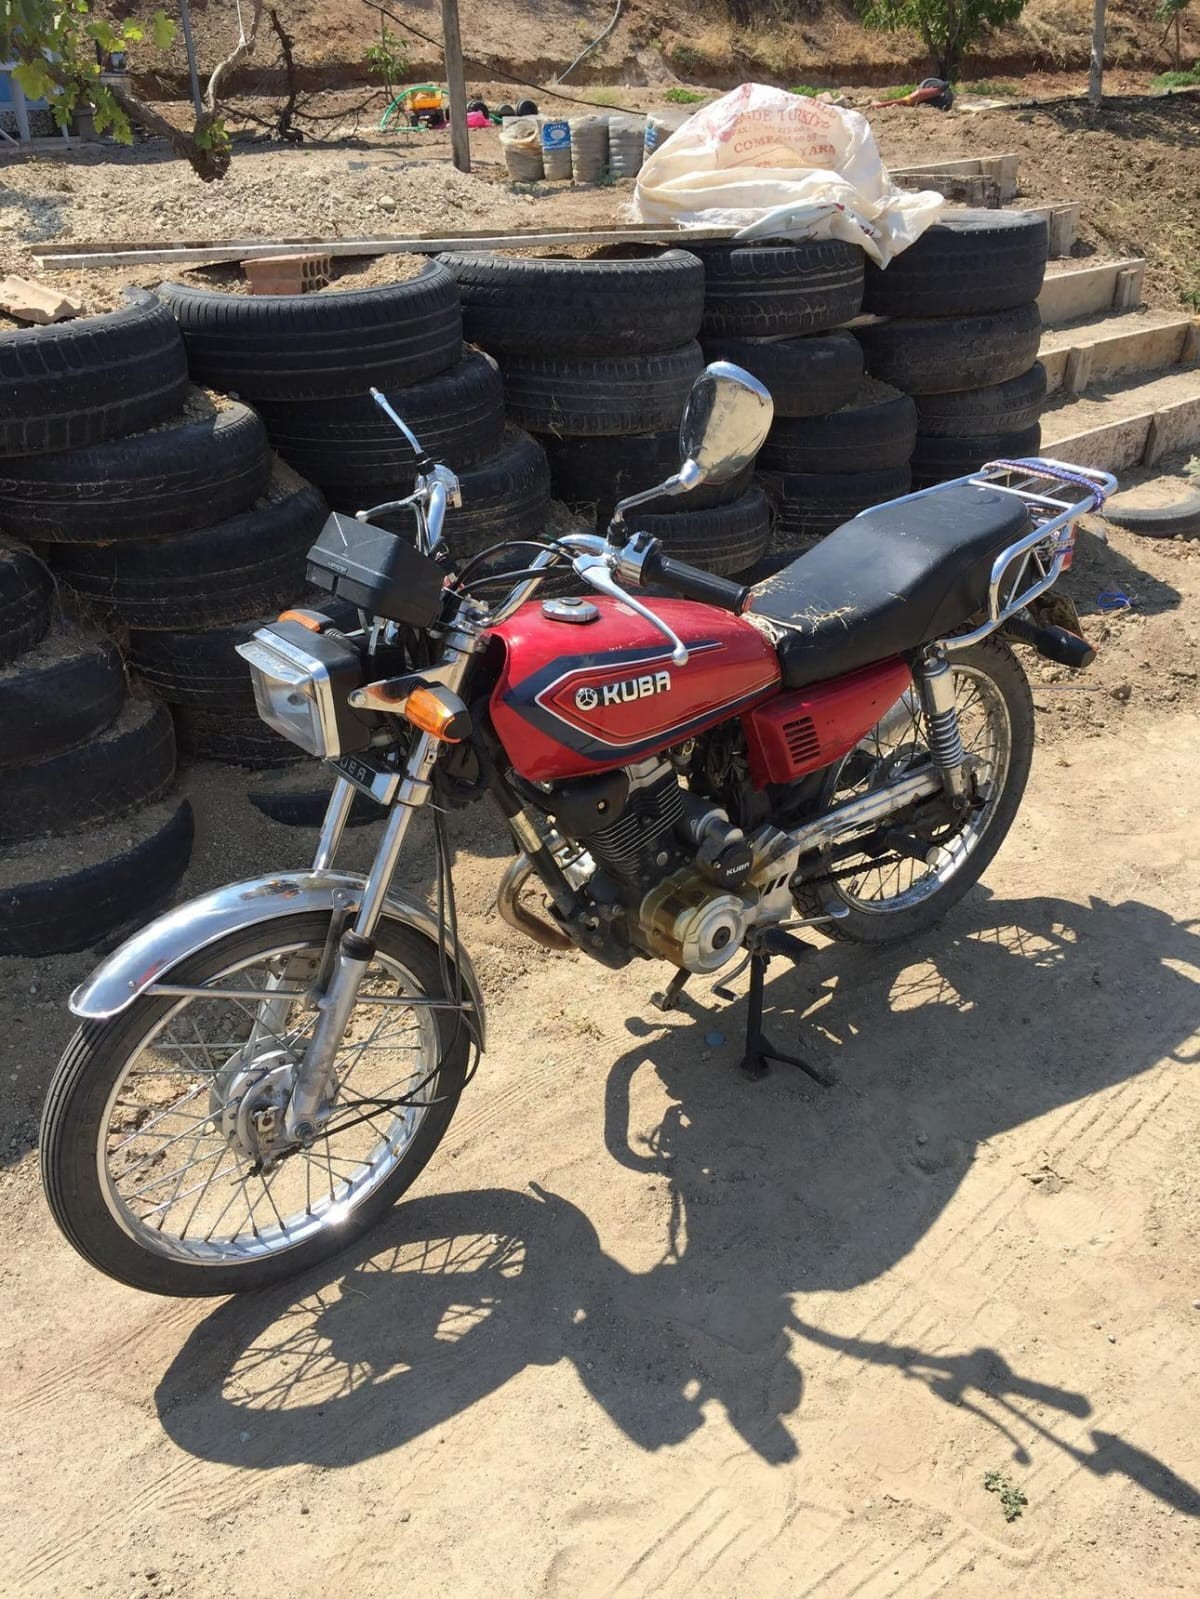 Elazığ’da Hırsız Park Edilmiş Motosikleti Çaldı